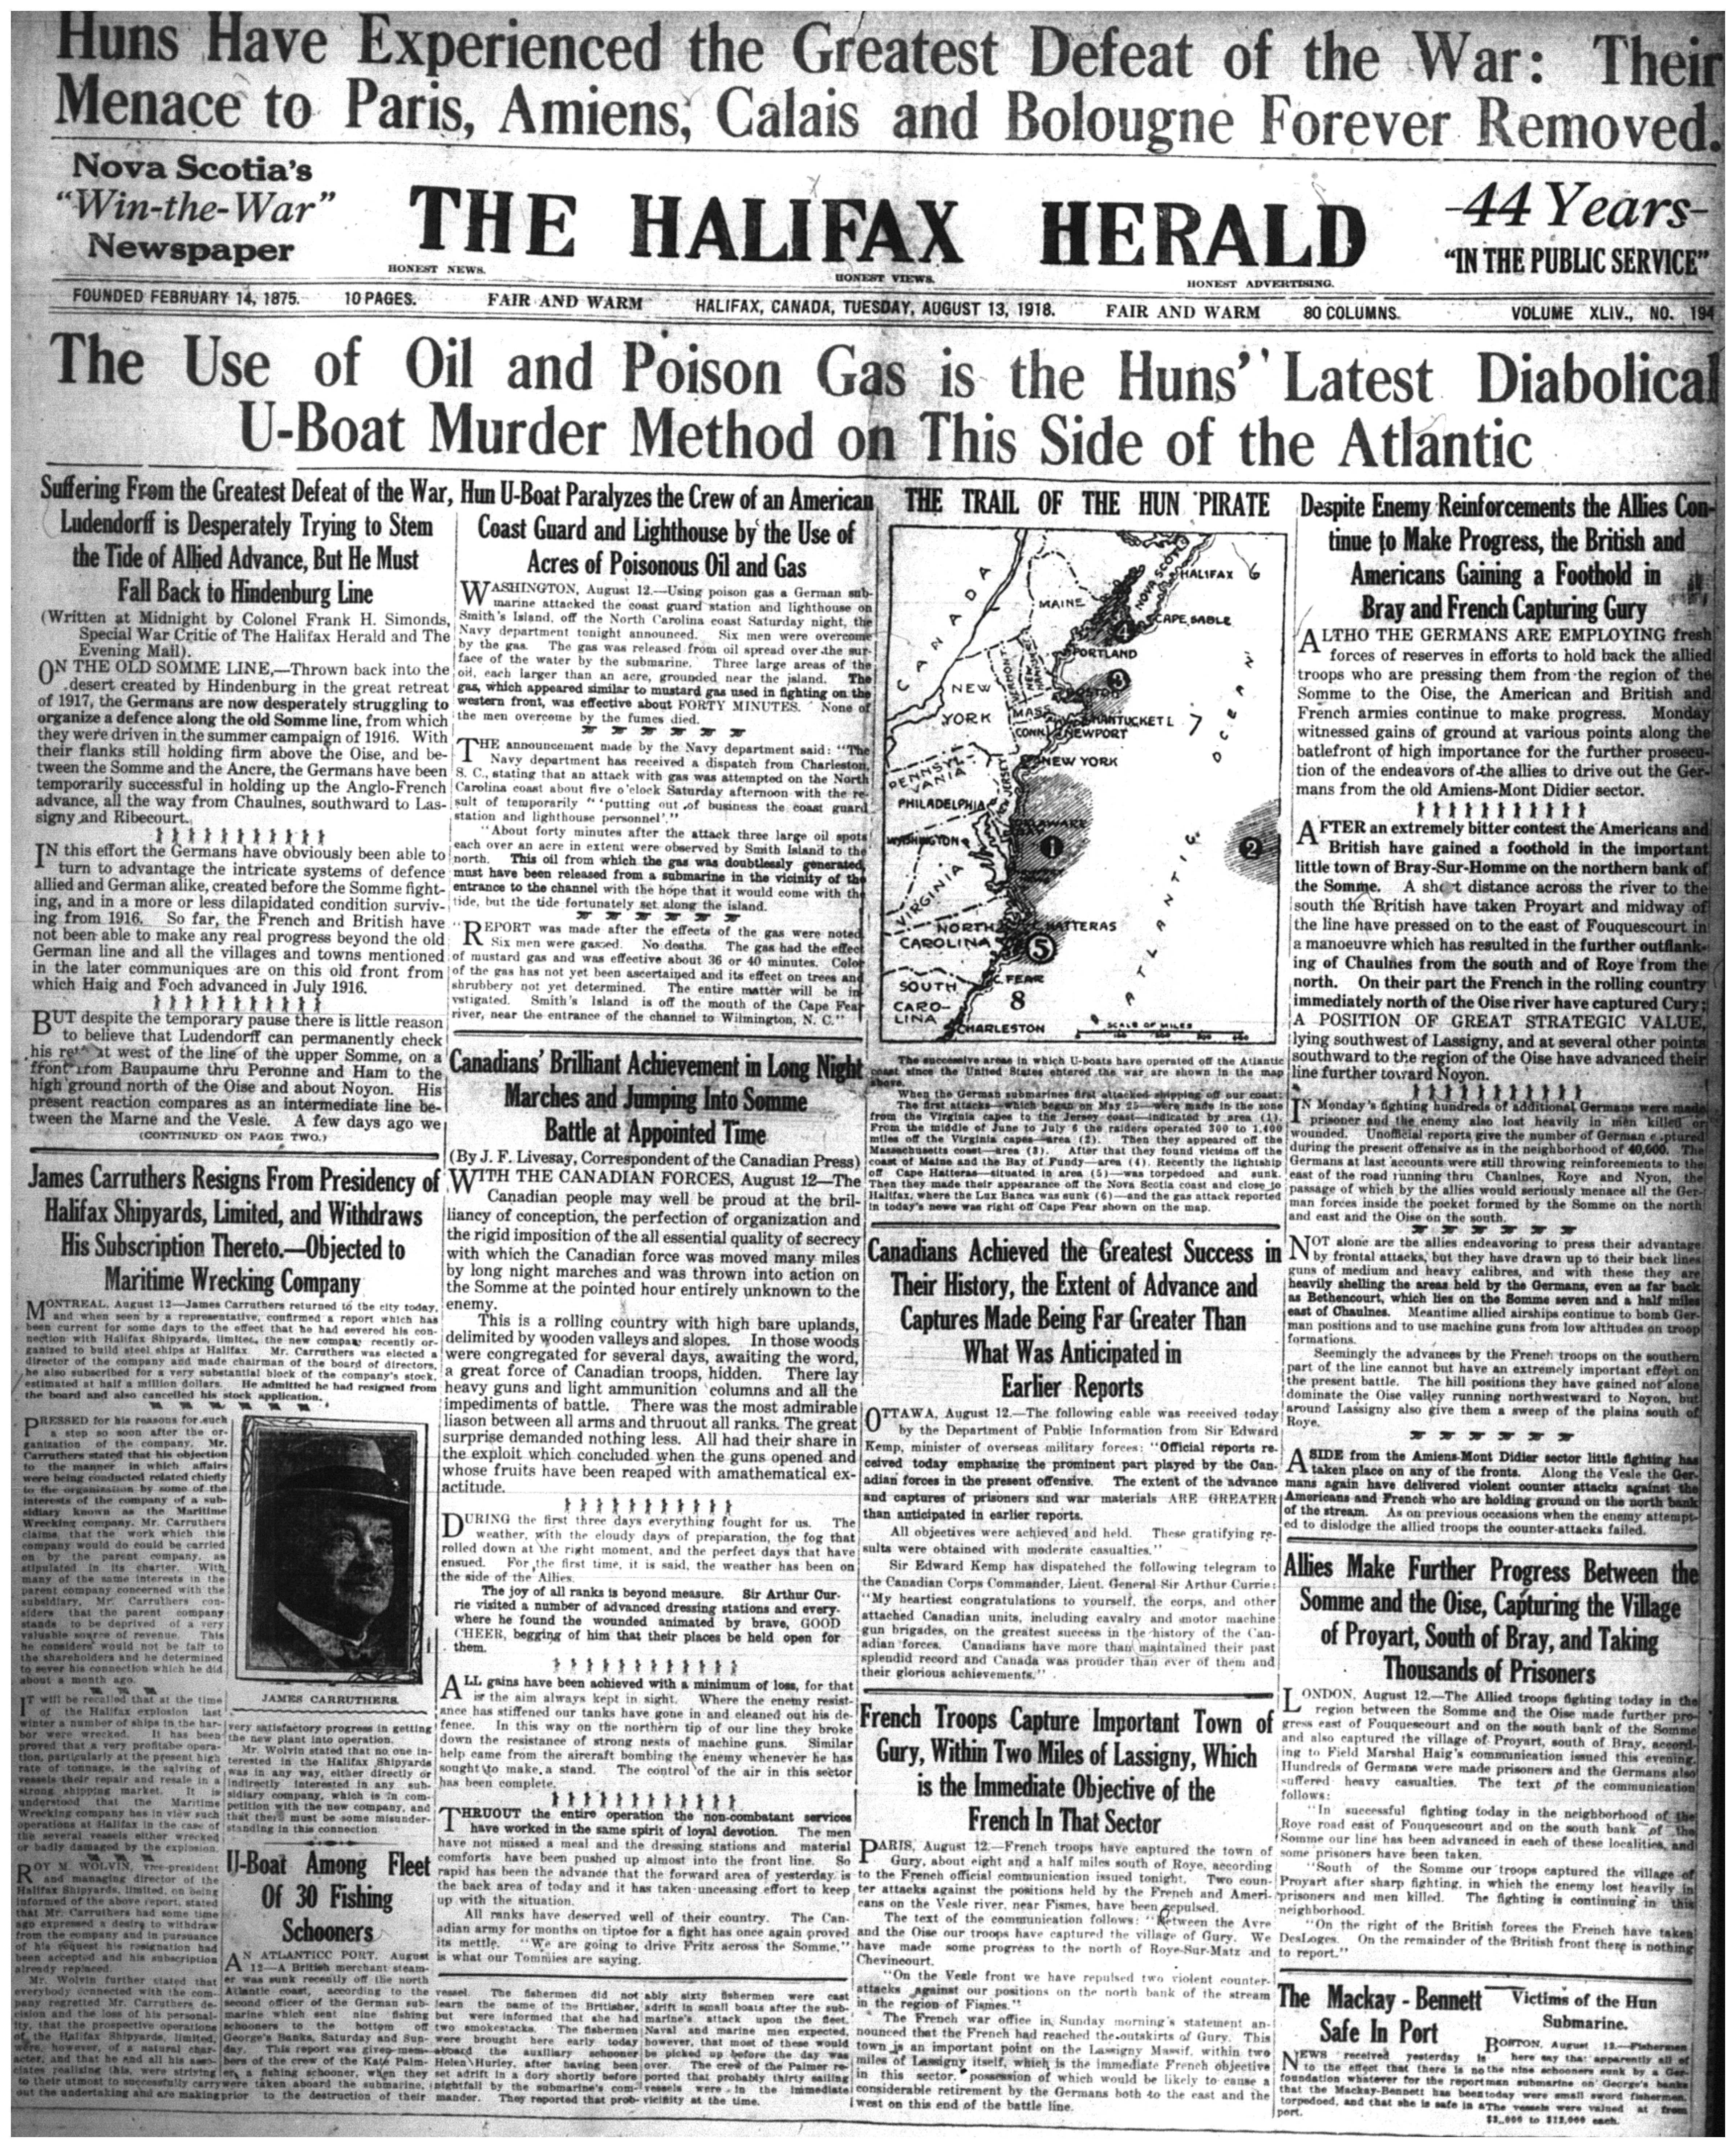 Une d’un journal anglophone de Halifax, The Halifax Herald – Une petite carte indique le trajet de sous-marins allemands le long des côtes Est des États-Unis et du Canada. Les manchettes pertinentes ont été transcrites.